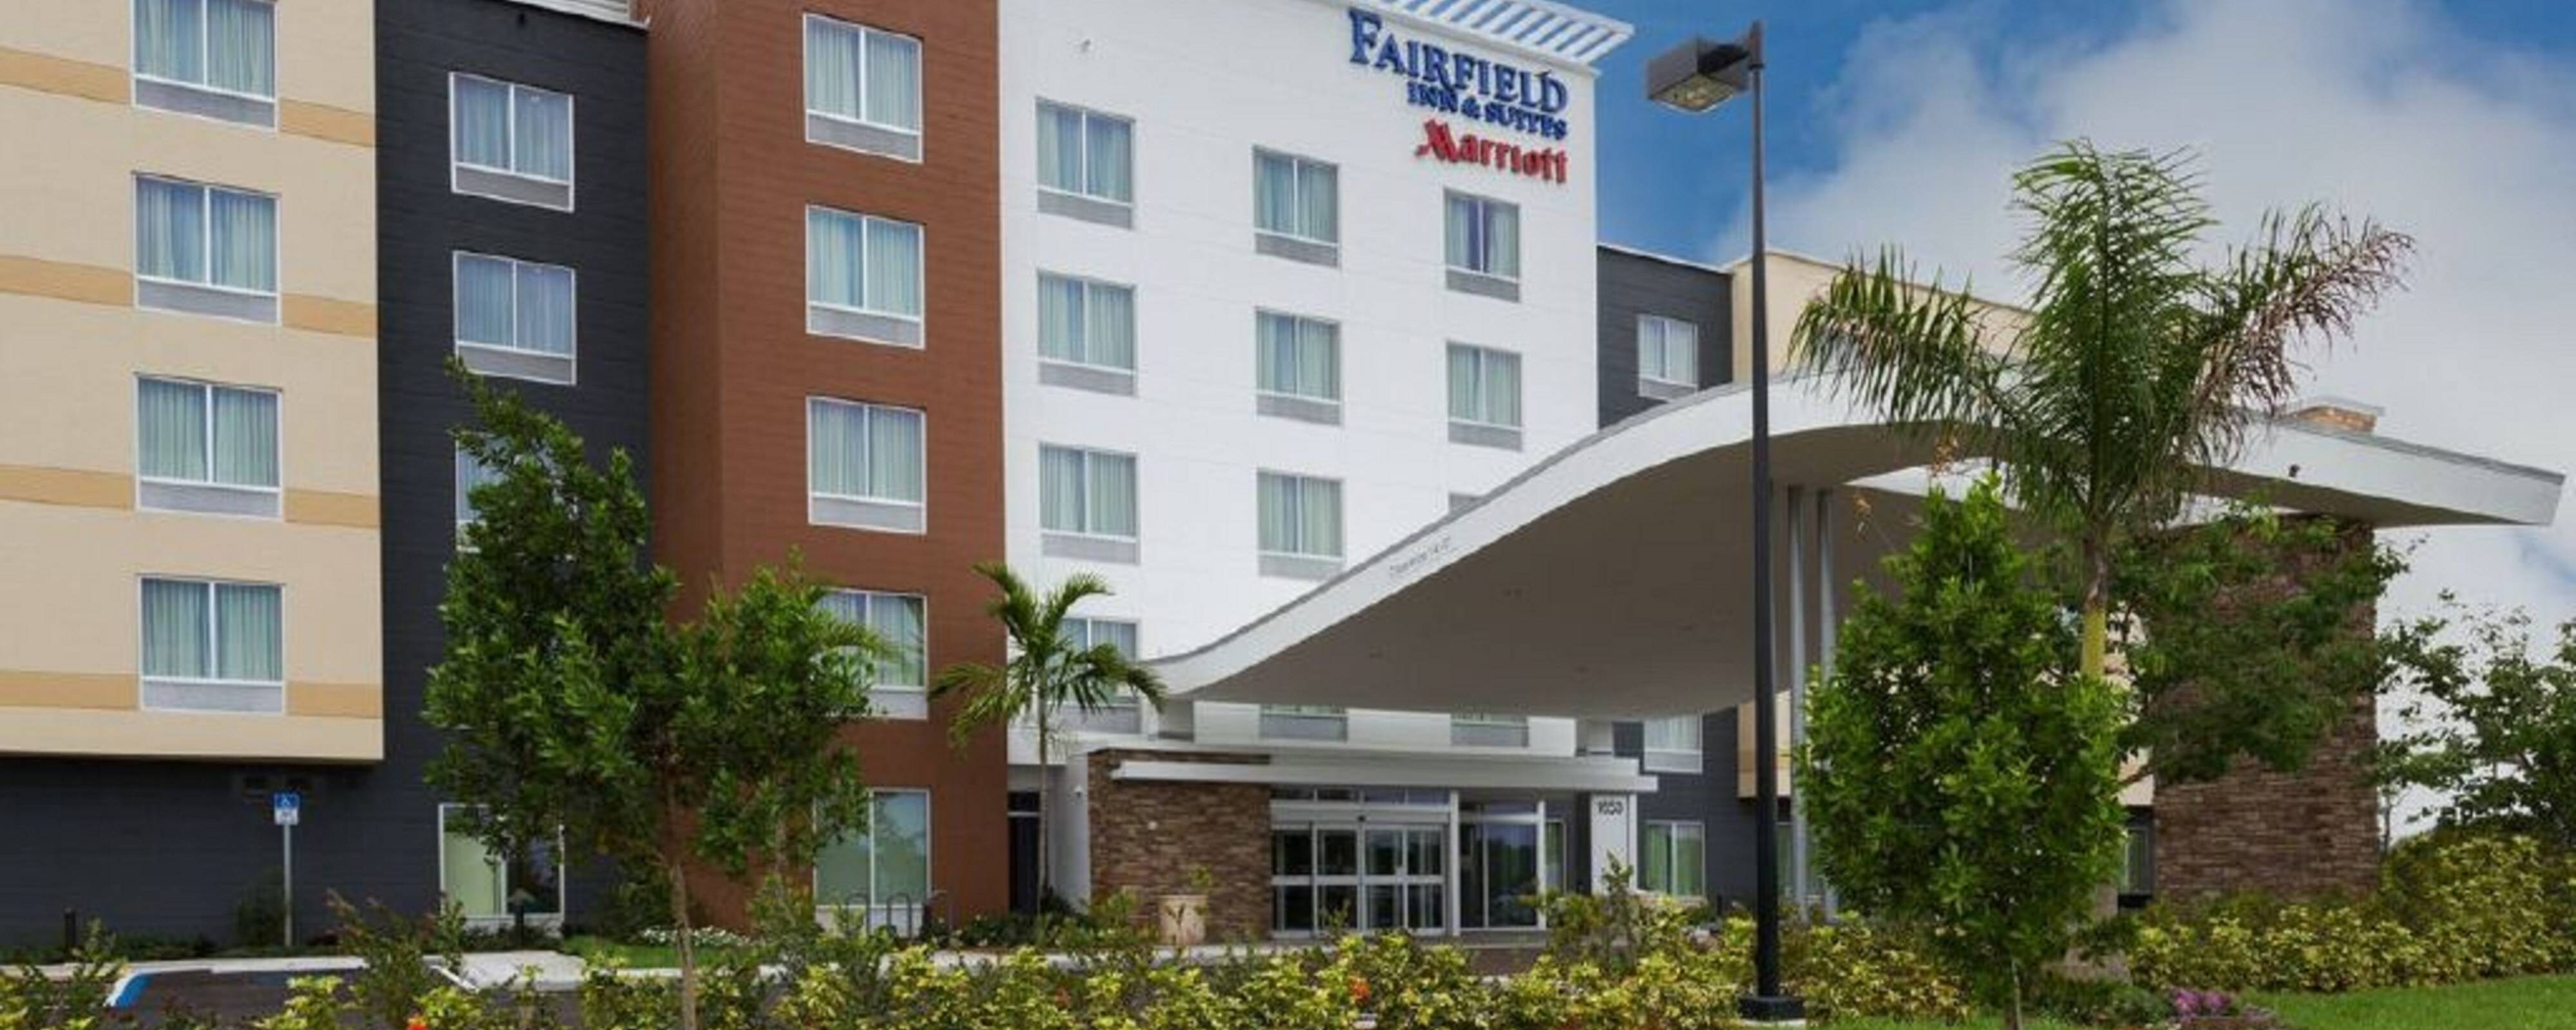 Pembroke Pines Hotel Fairfield Inn Suites